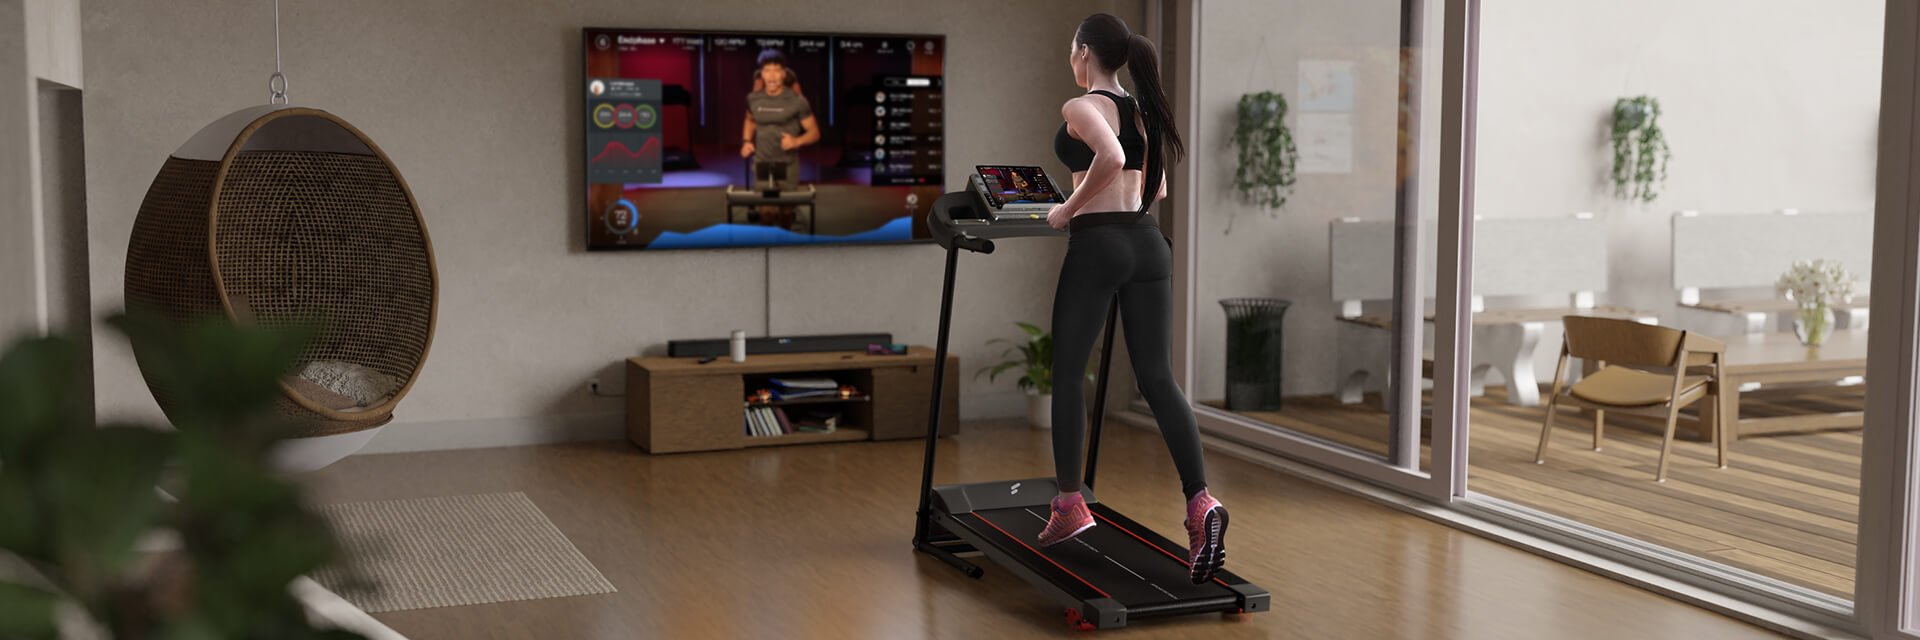 Frau in Sportkleidung läuft auf schwarzem Laufband F10, TV im Hintergrund